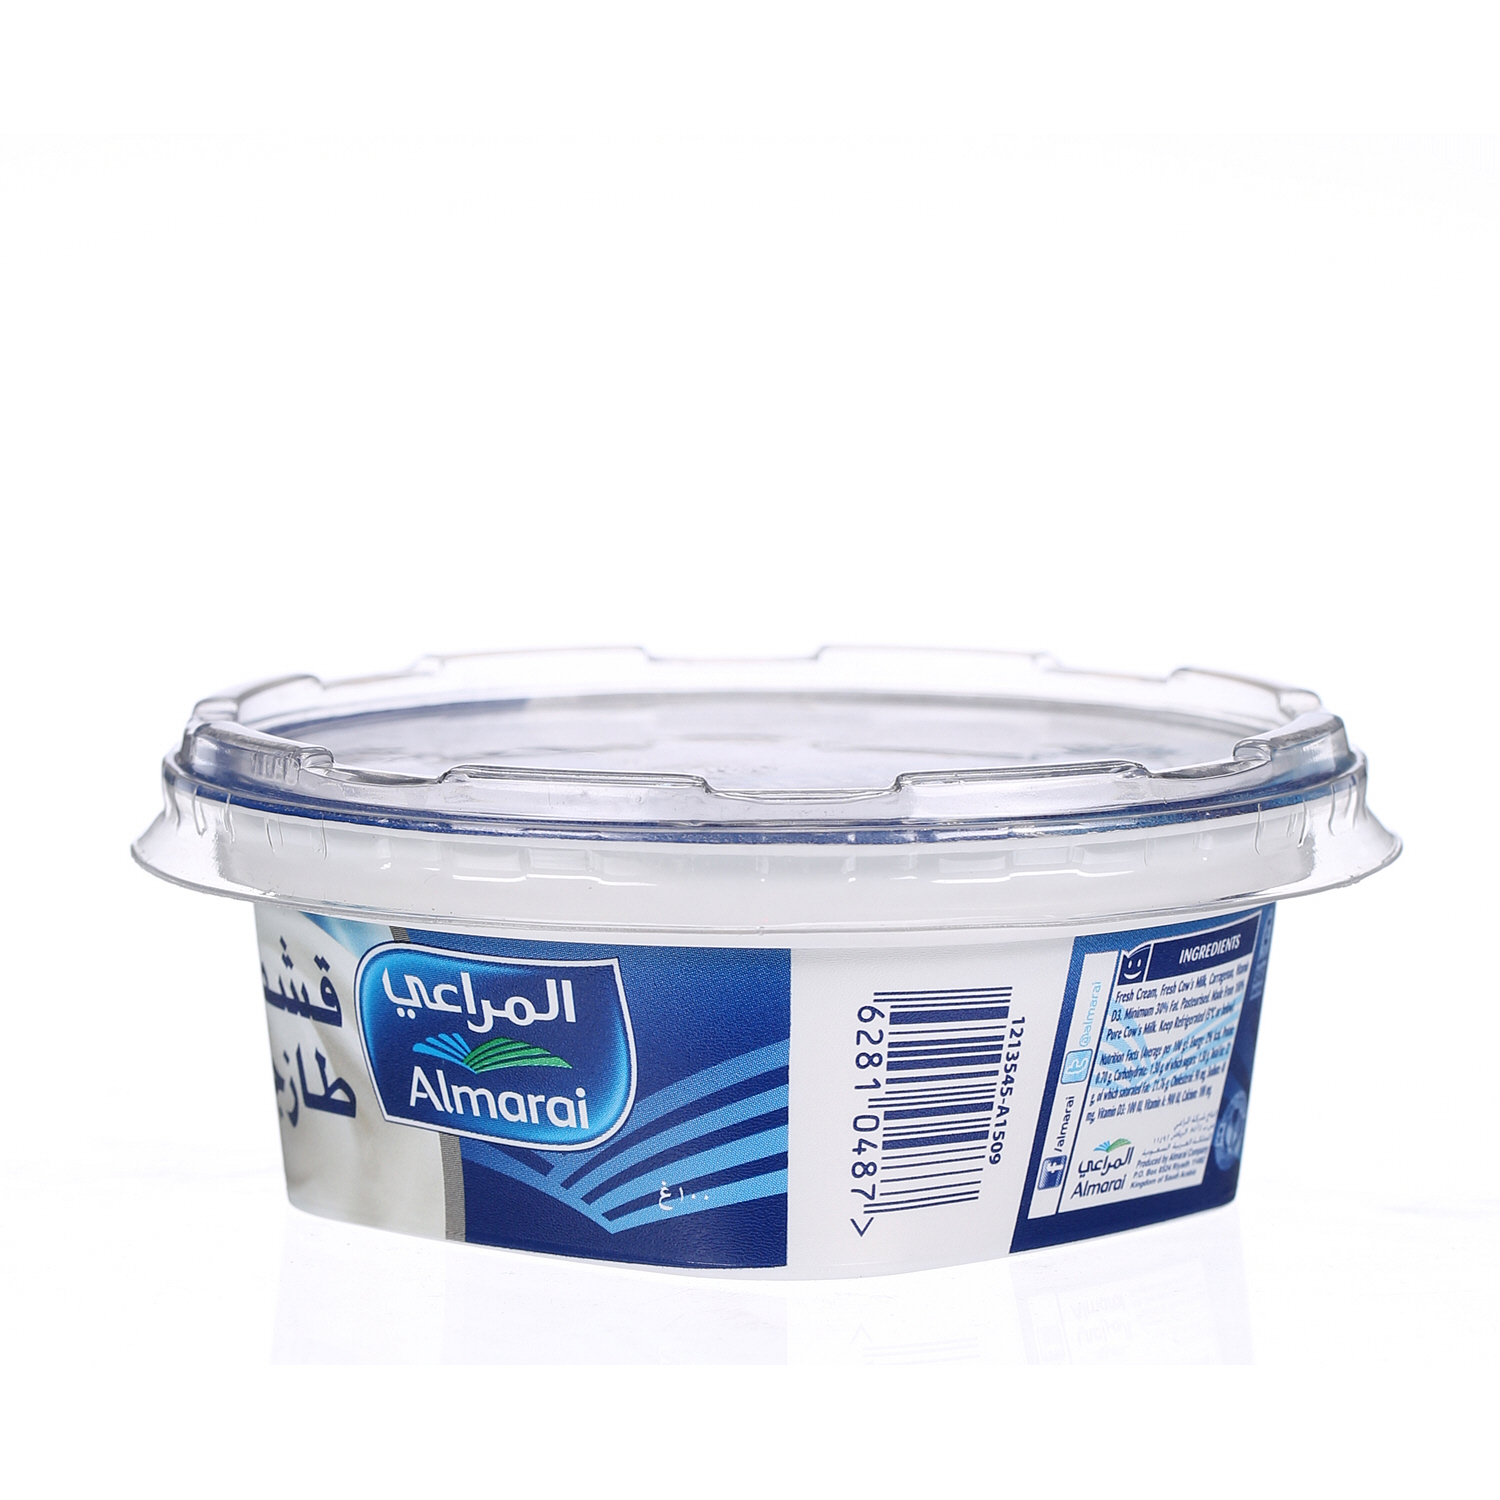 Almarai Fresh Cream 100gm